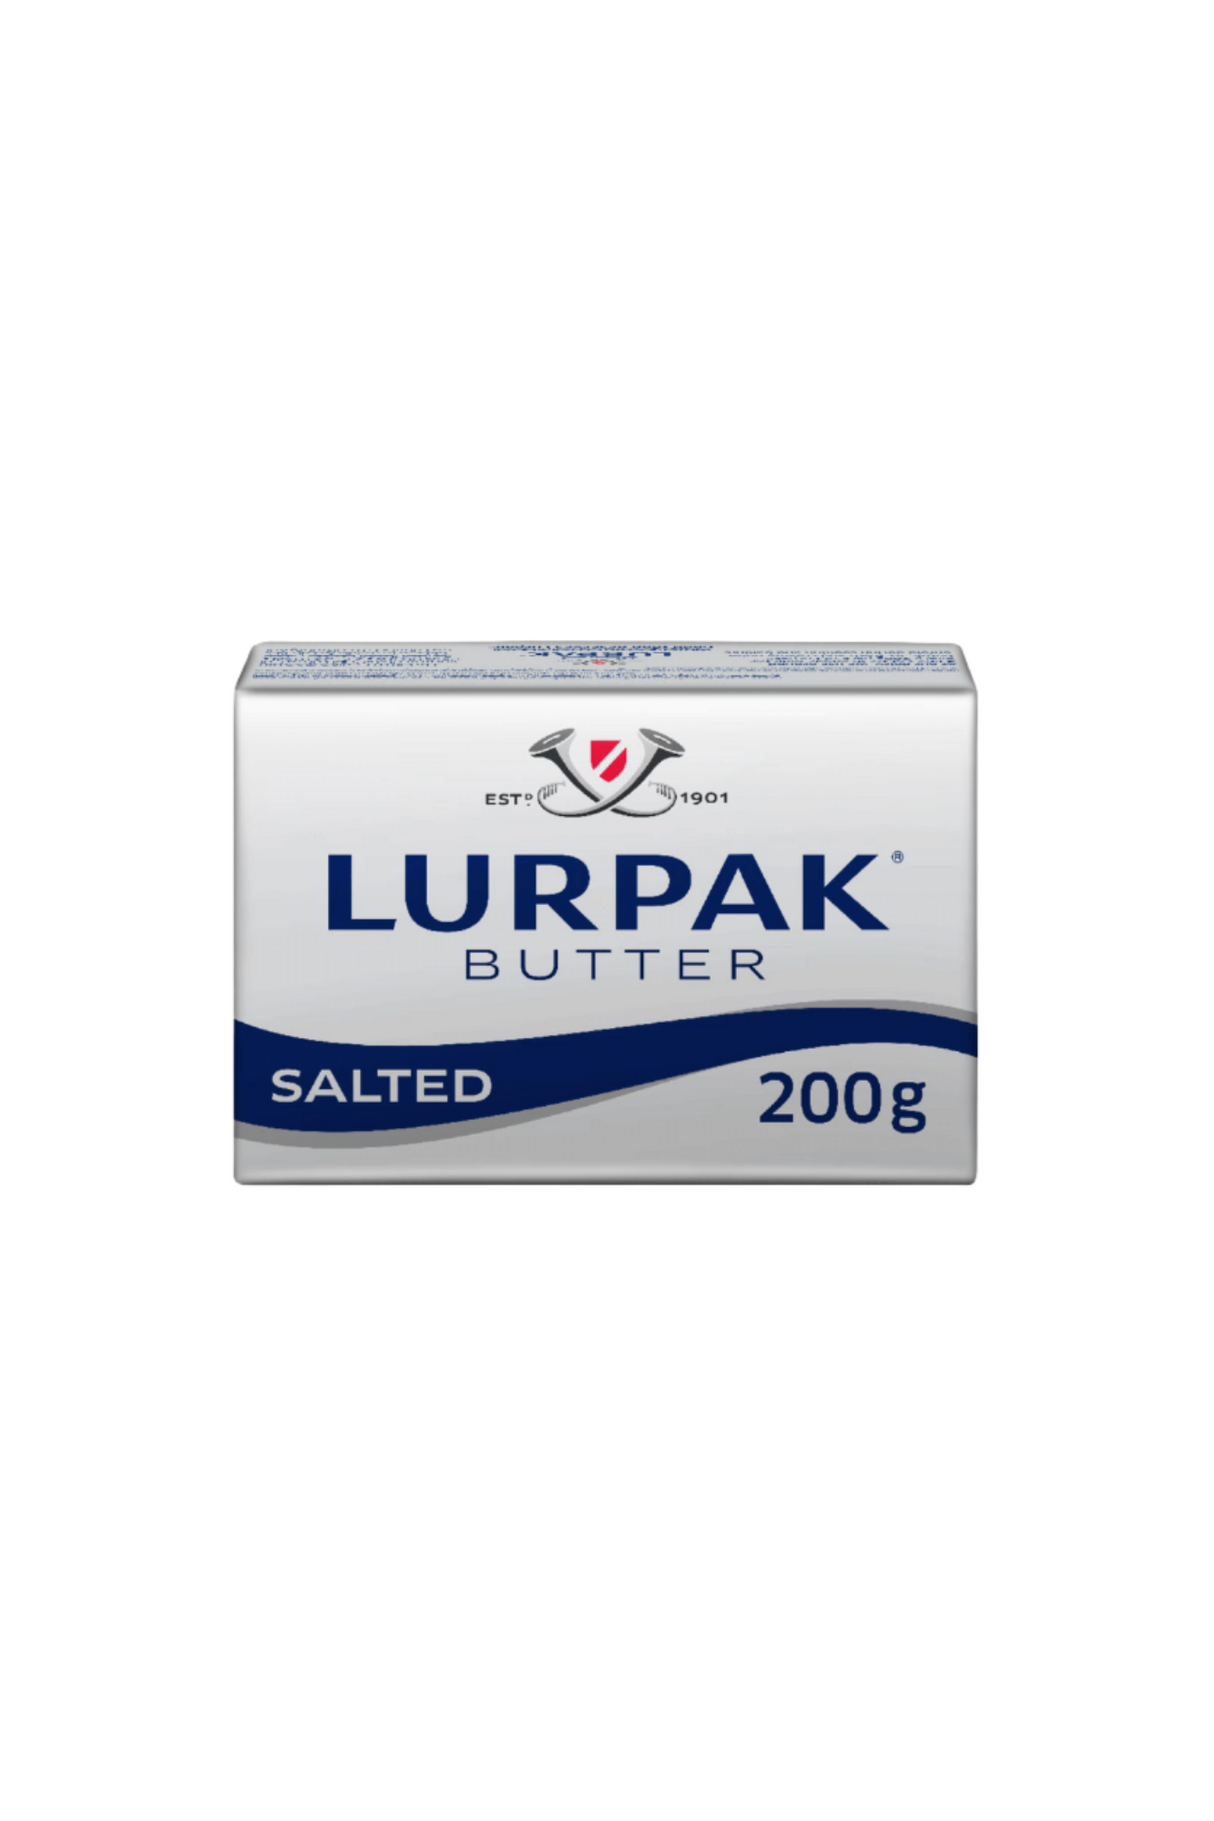 lurpak butter salted 200g